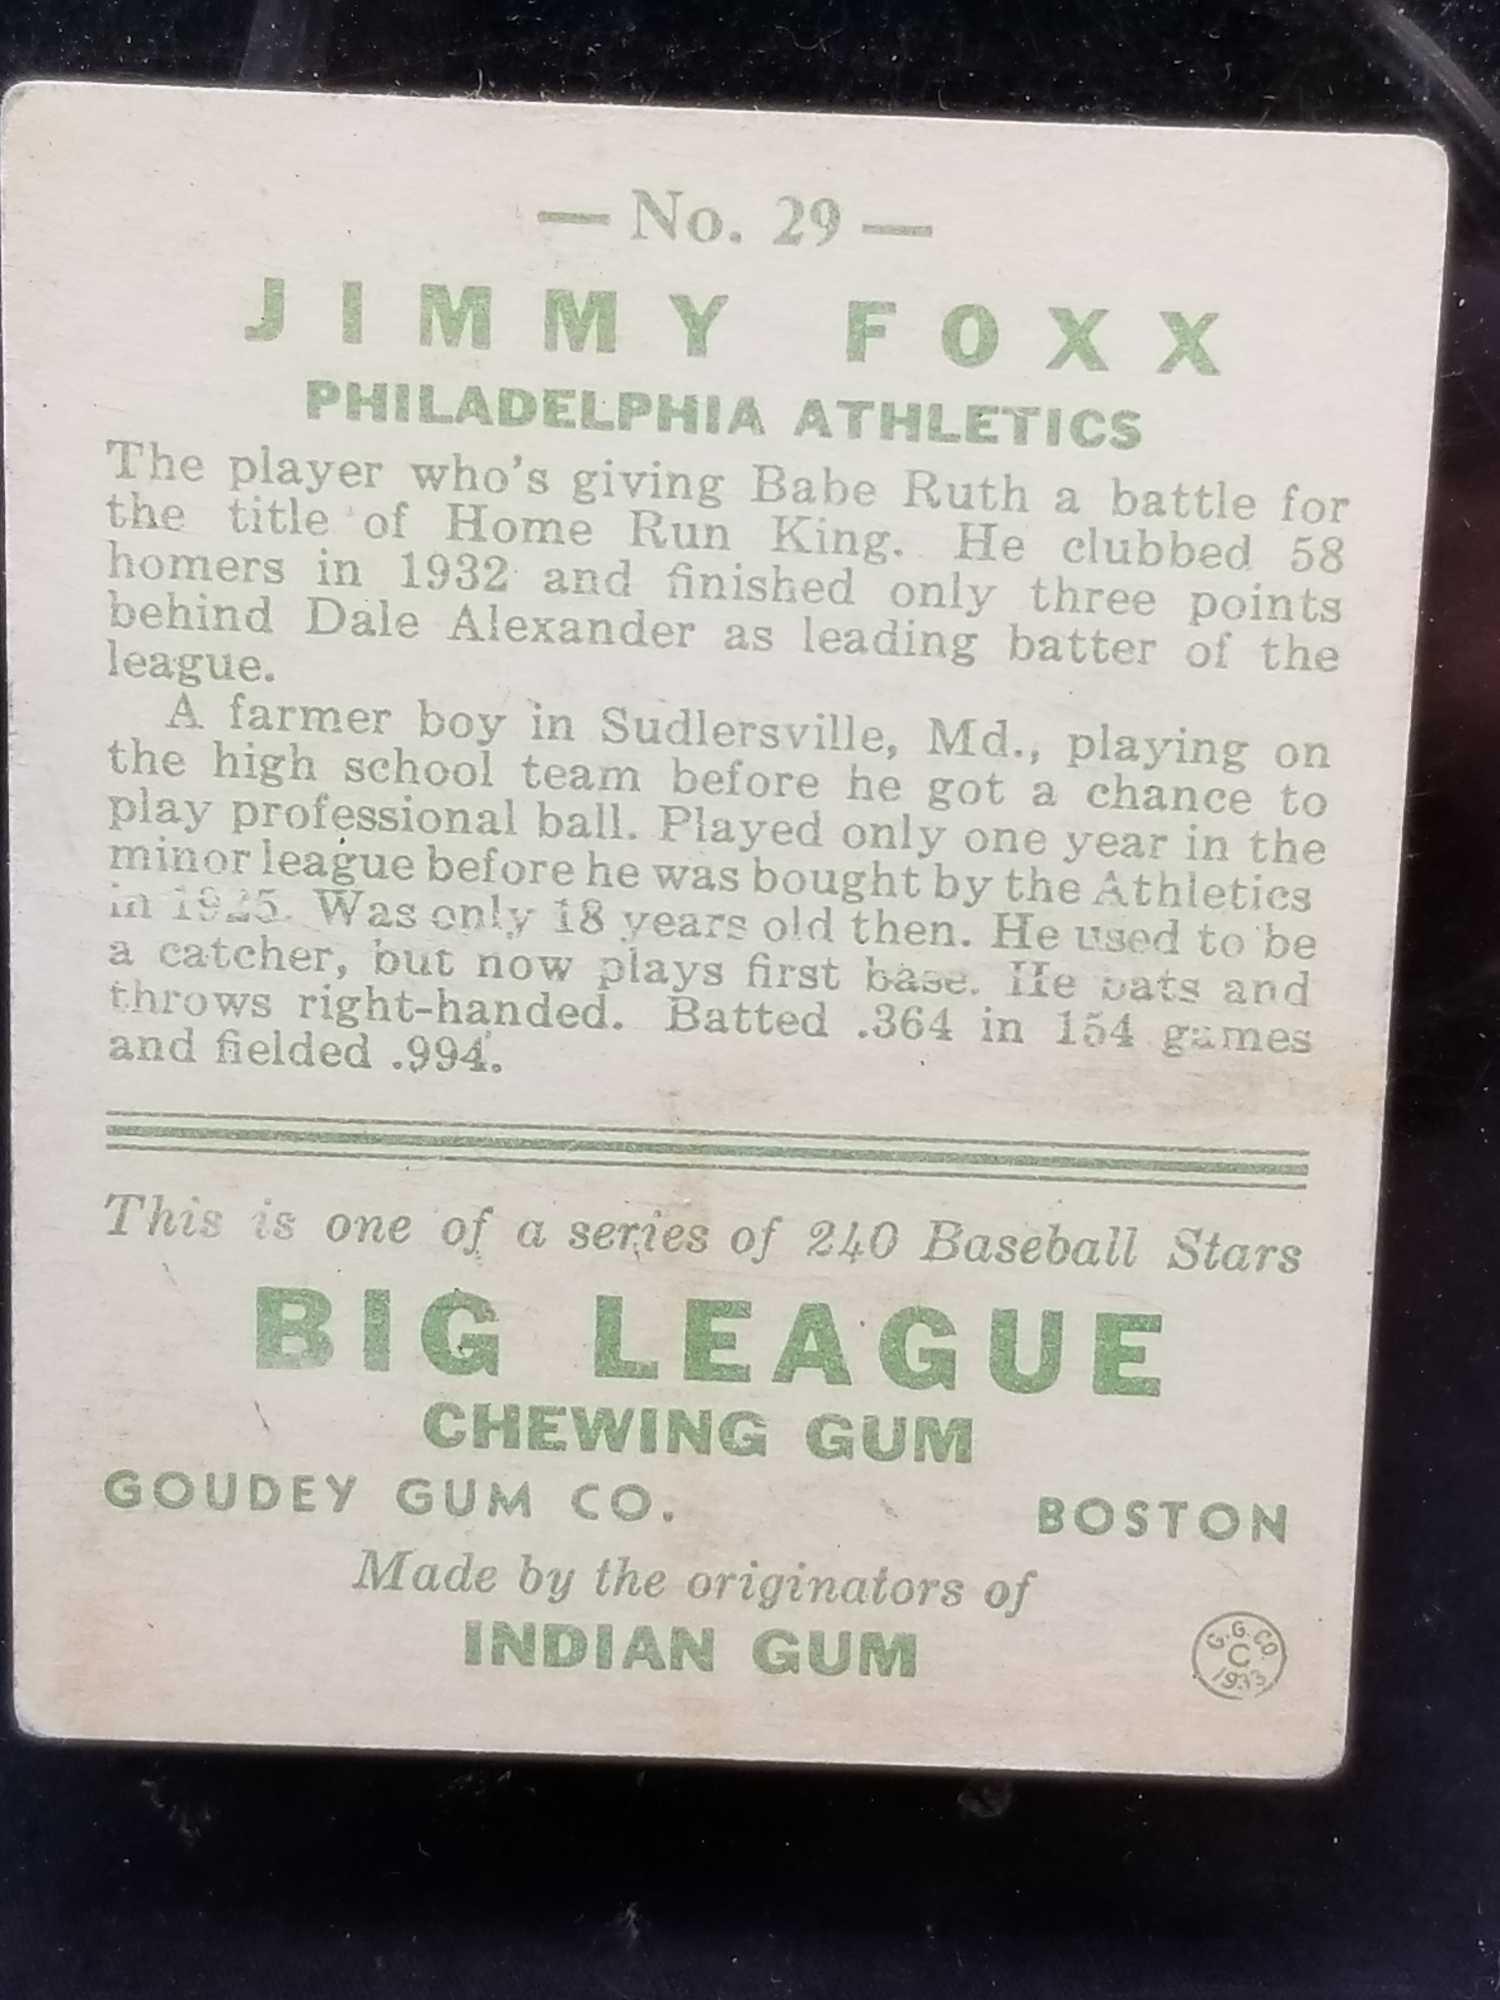 1933 Goudey #29 Jimmy Foxx